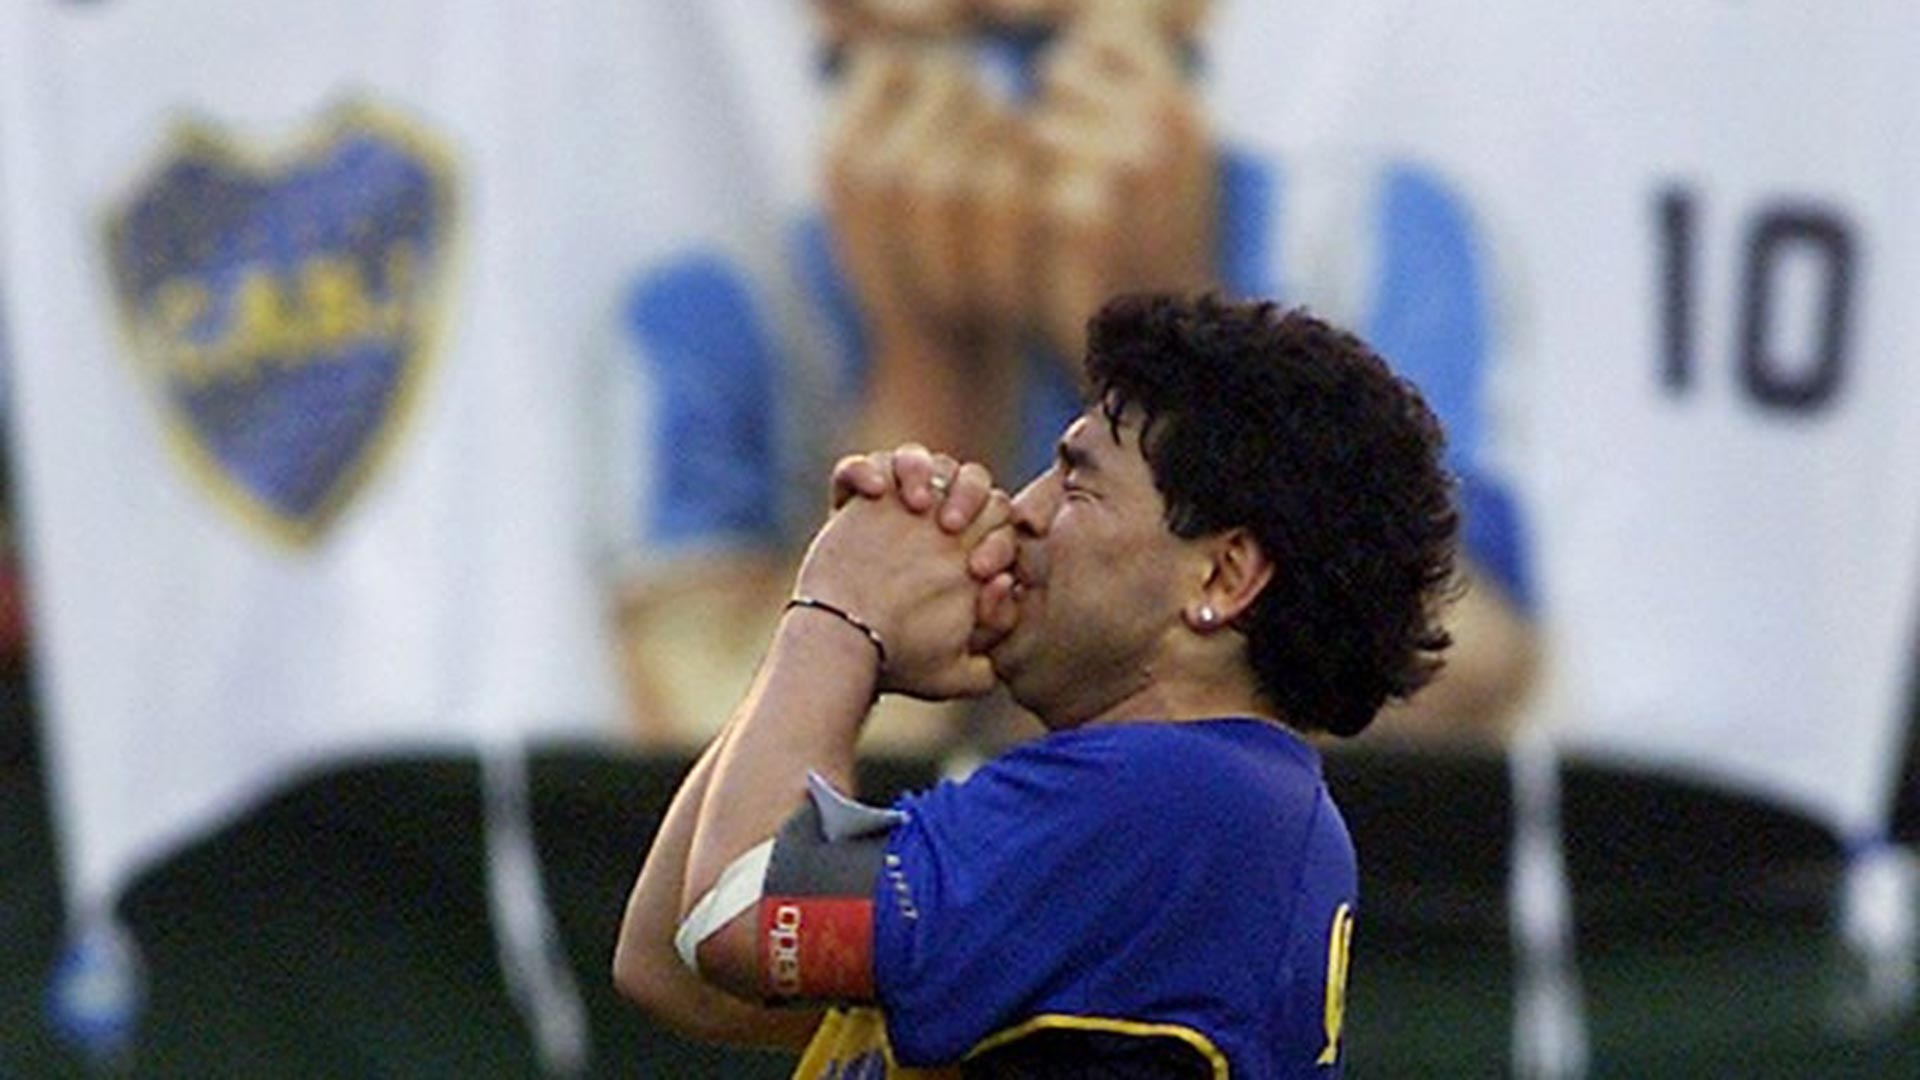 Foto de archivo de la leyenda del fútbol Diego Maradona durante su partido despedida en el estadio de Boca Juniors en Buenos Aires. REUTERS Nov 10, 2001.